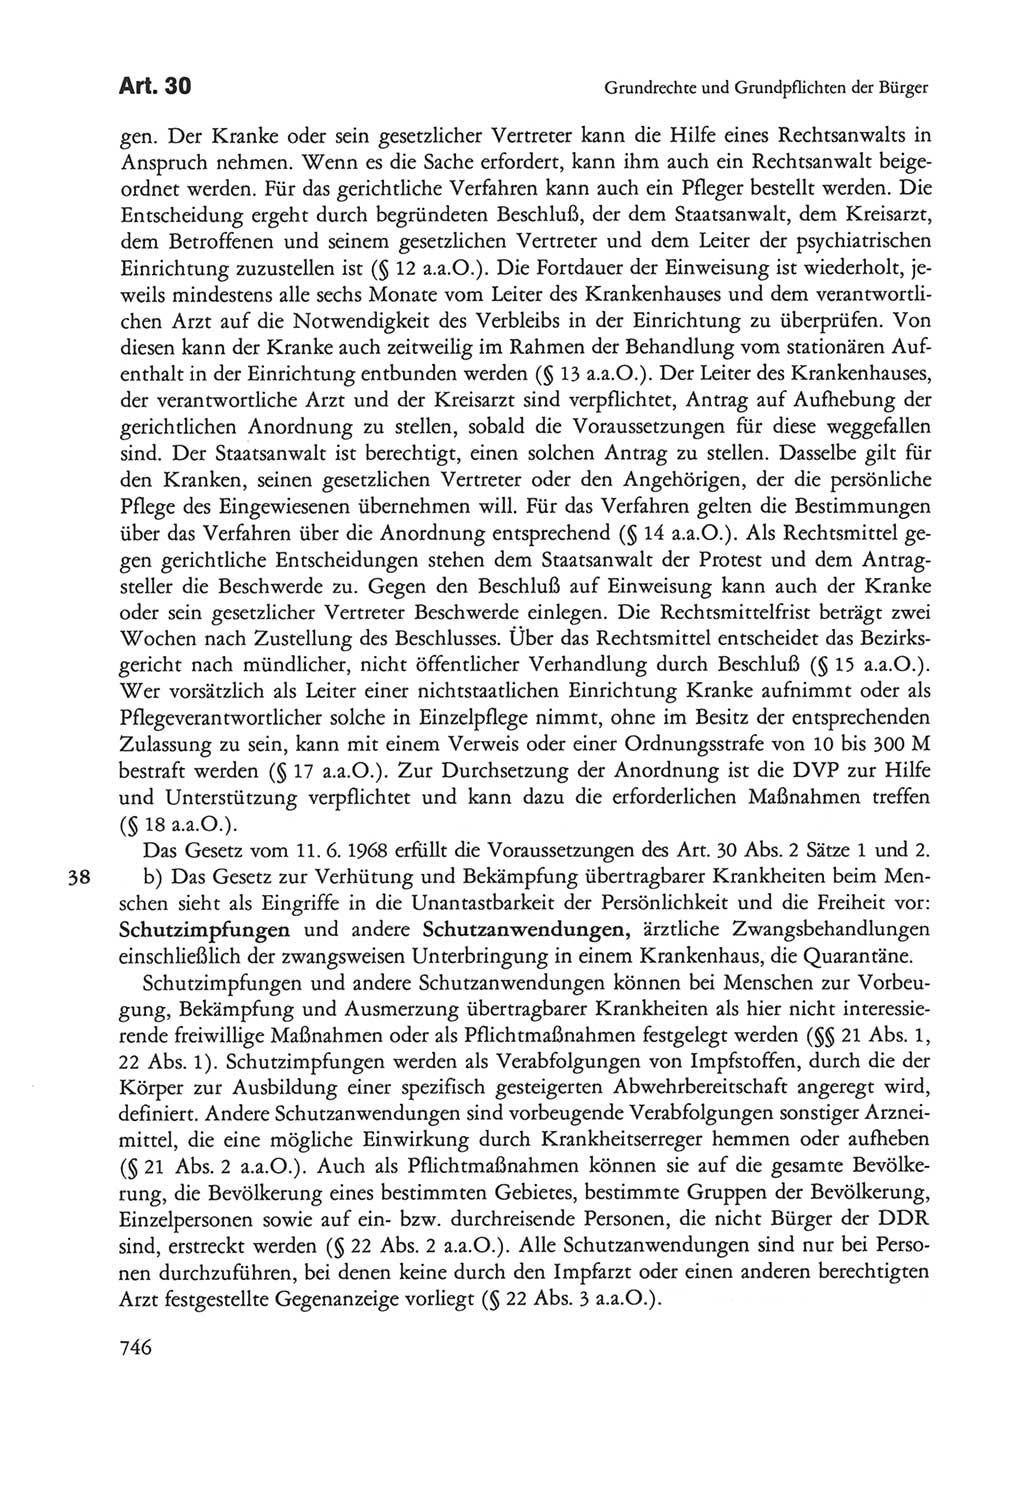 Die sozialistische Verfassung der Deutschen Demokratischen Republik (DDR), Kommentar mit einem Nachtrag 1997, Seite 746 (Soz. Verf. DDR Komm. Nachtr. 1997, S. 746)